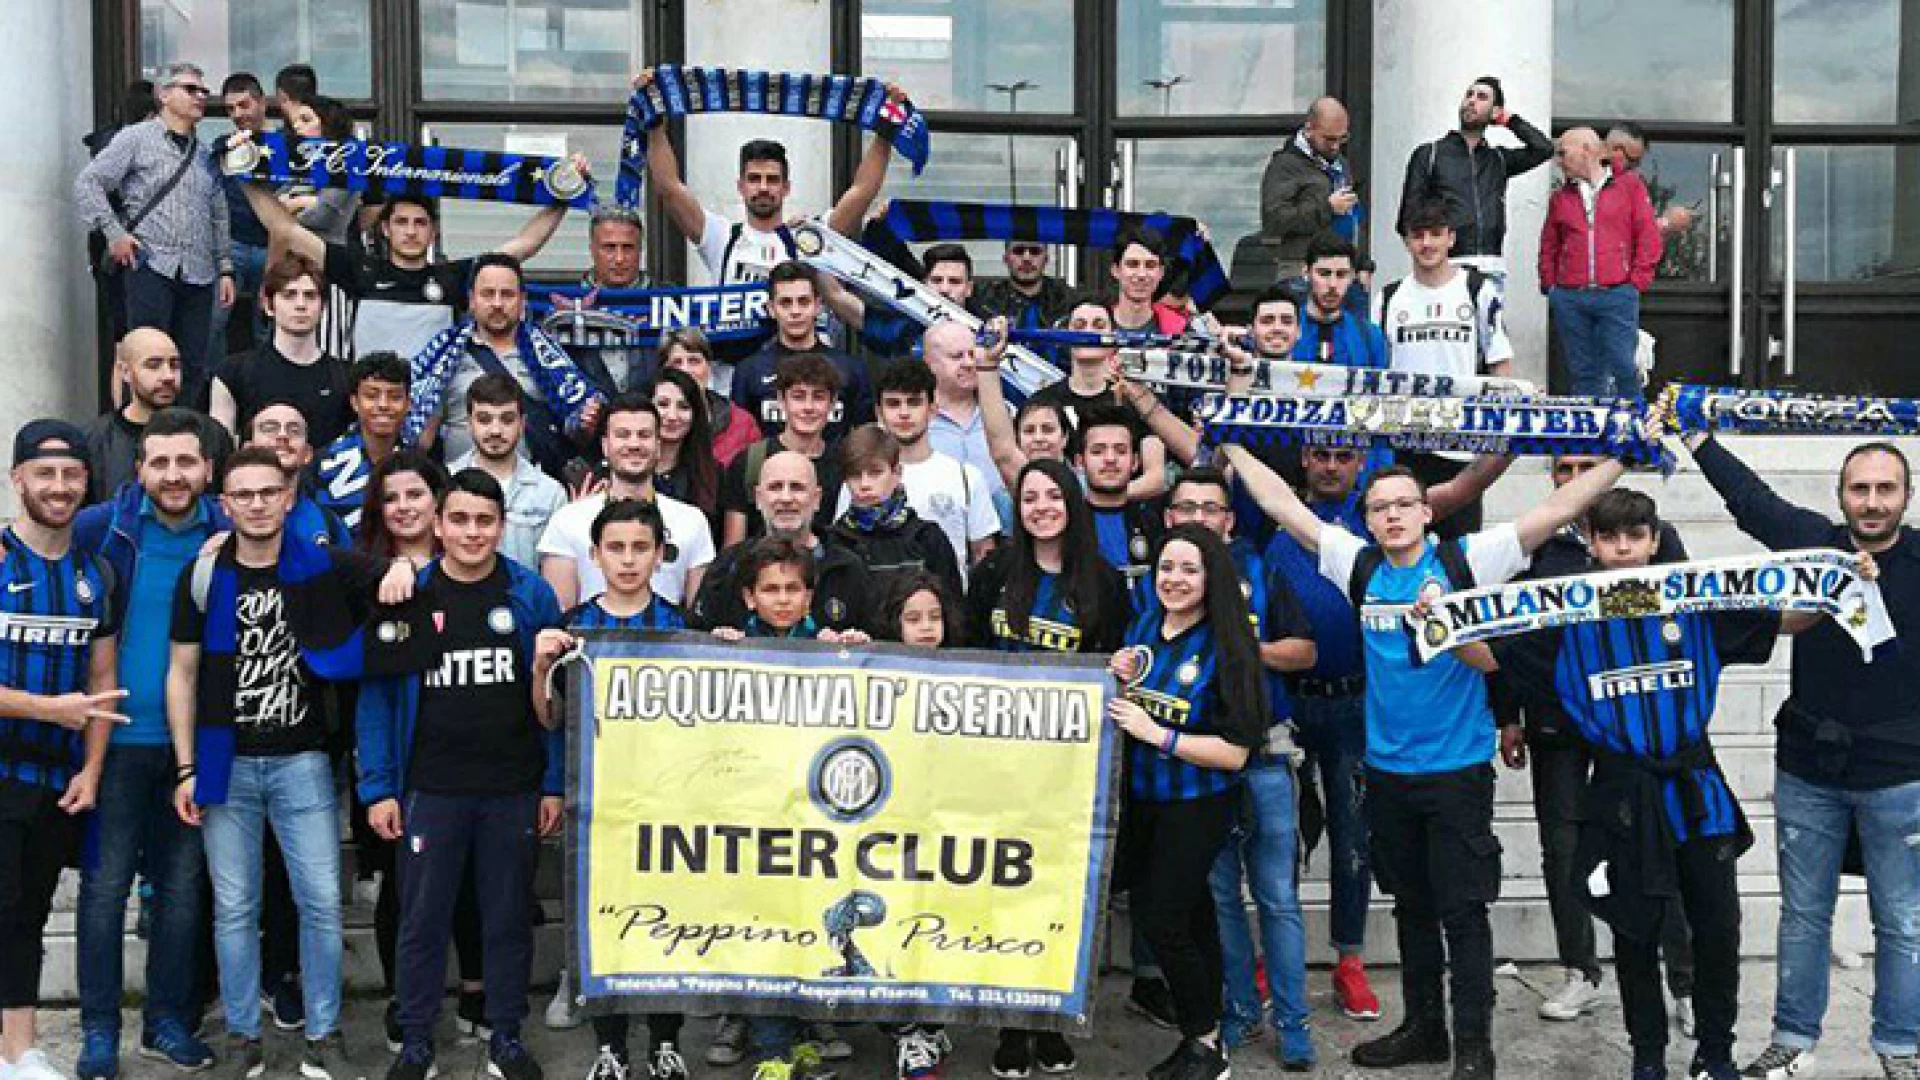 Acquaviva d’Isernia. a fine luglio s festeggiano i nove anni di attività dell’Inter Club. Un sodalizio unico e compatto nel nome dell’amicizia.